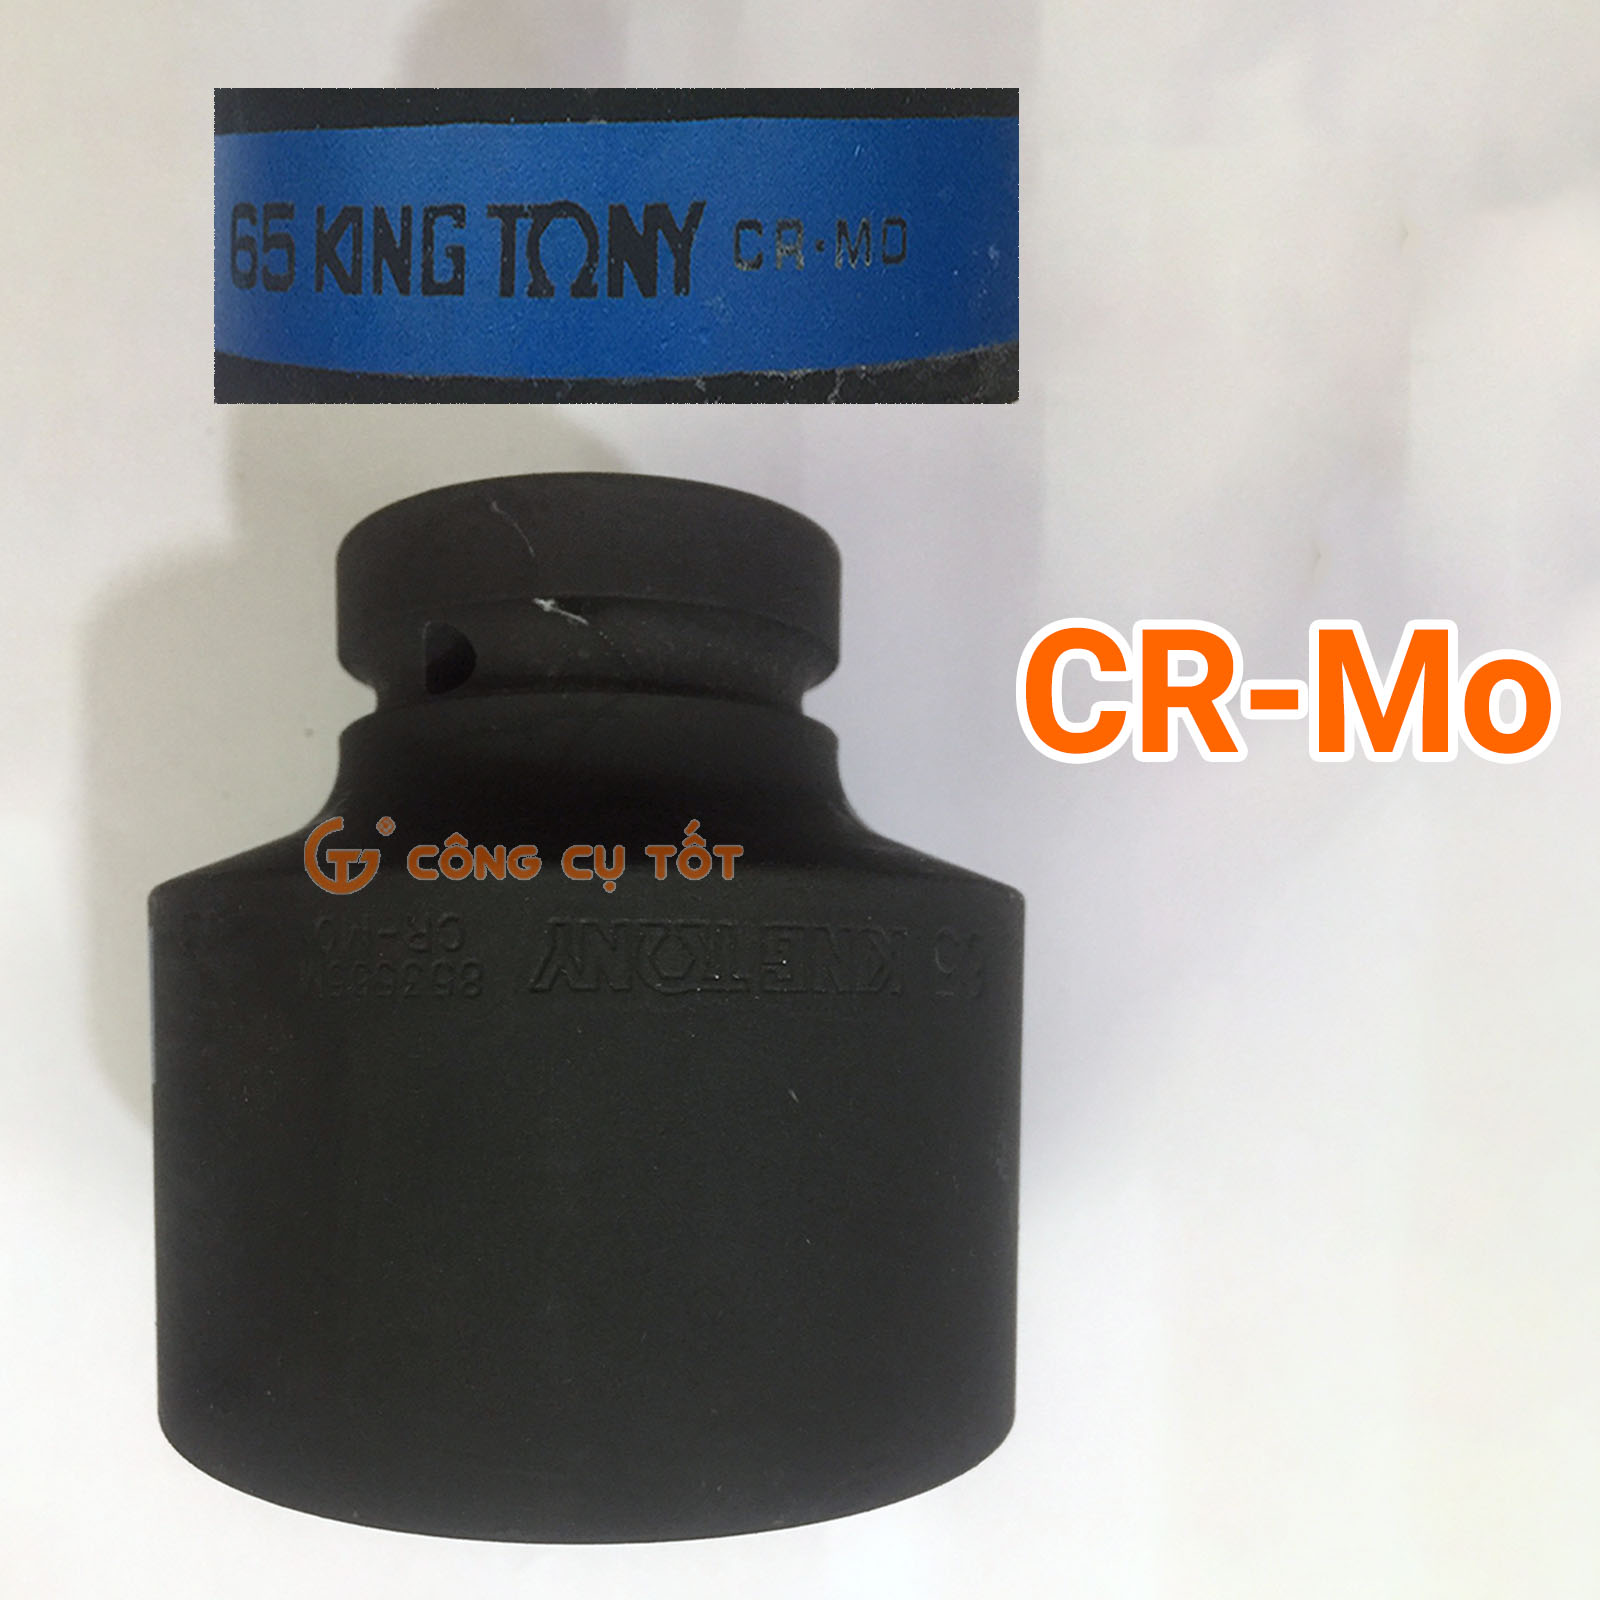  chất liệu được làm từ thép Cr-Mo cùng lớp phủ màu đen